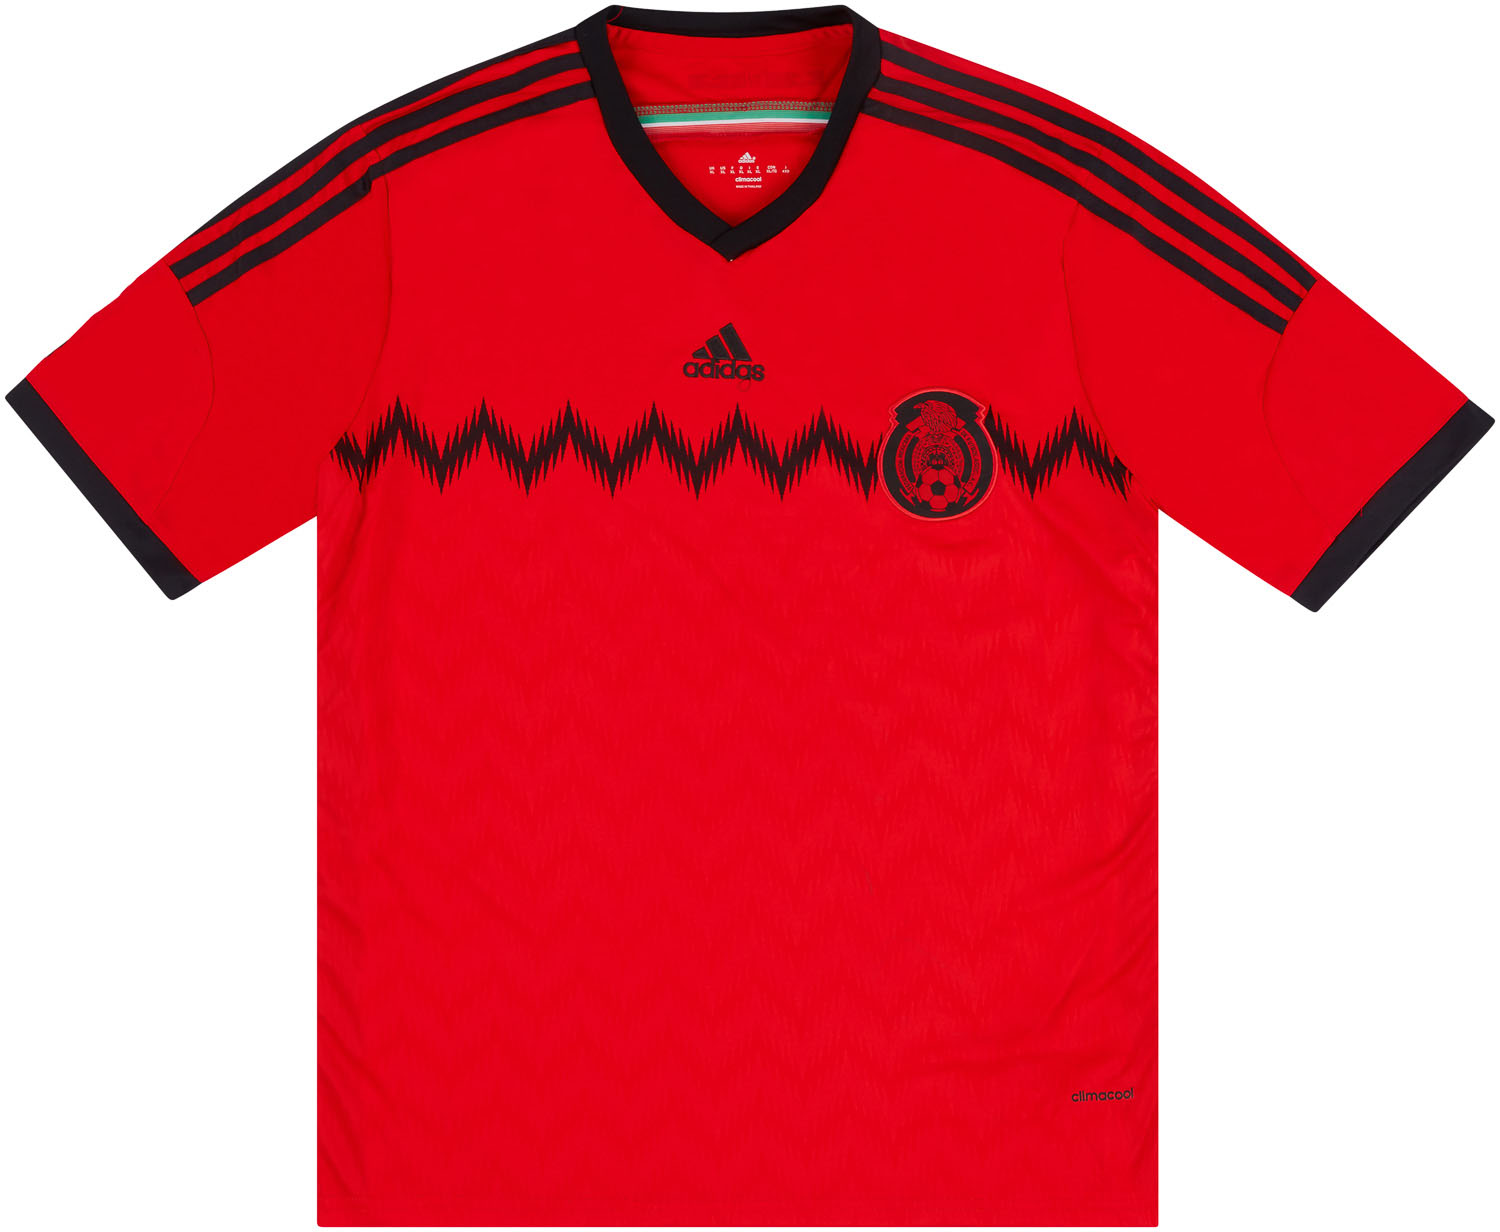 Retro Mexico Shirt